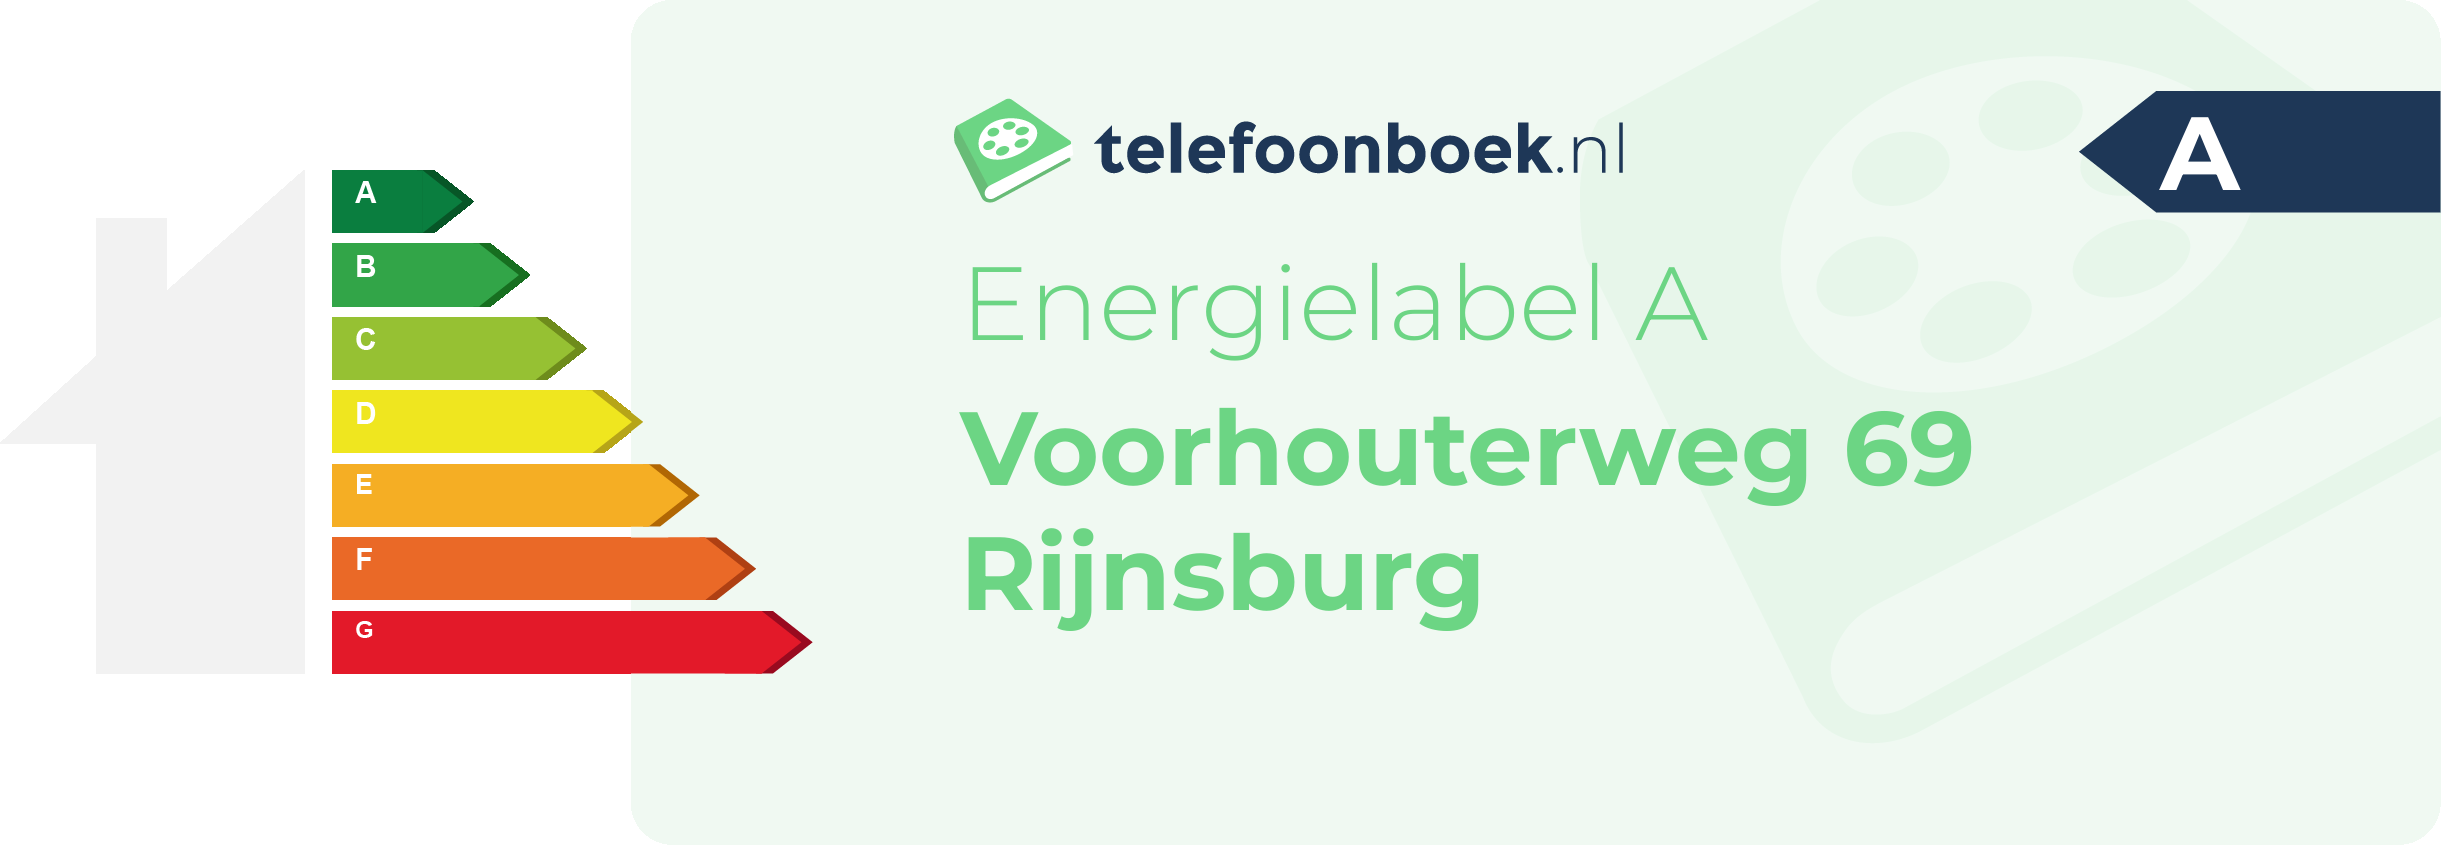 Energielabel Voorhouterweg 69 Rijnsburg